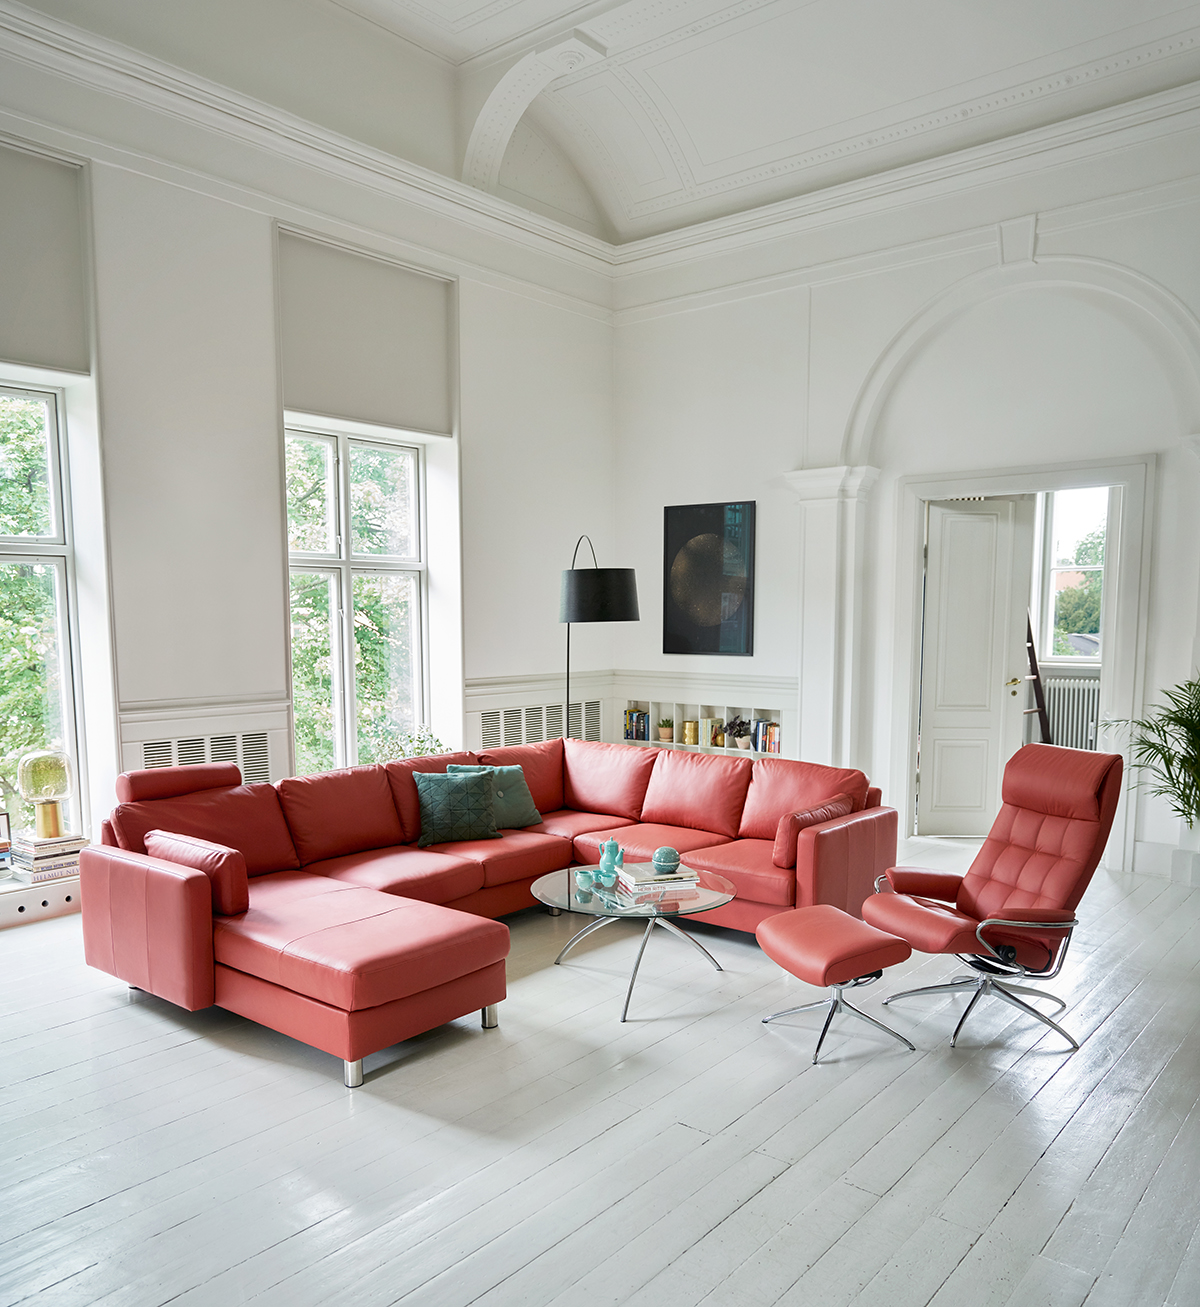 Entspannt euch nach dem Frühjahrsputz auf eurem Stressless Sofa und geniesst eure Wohnung.